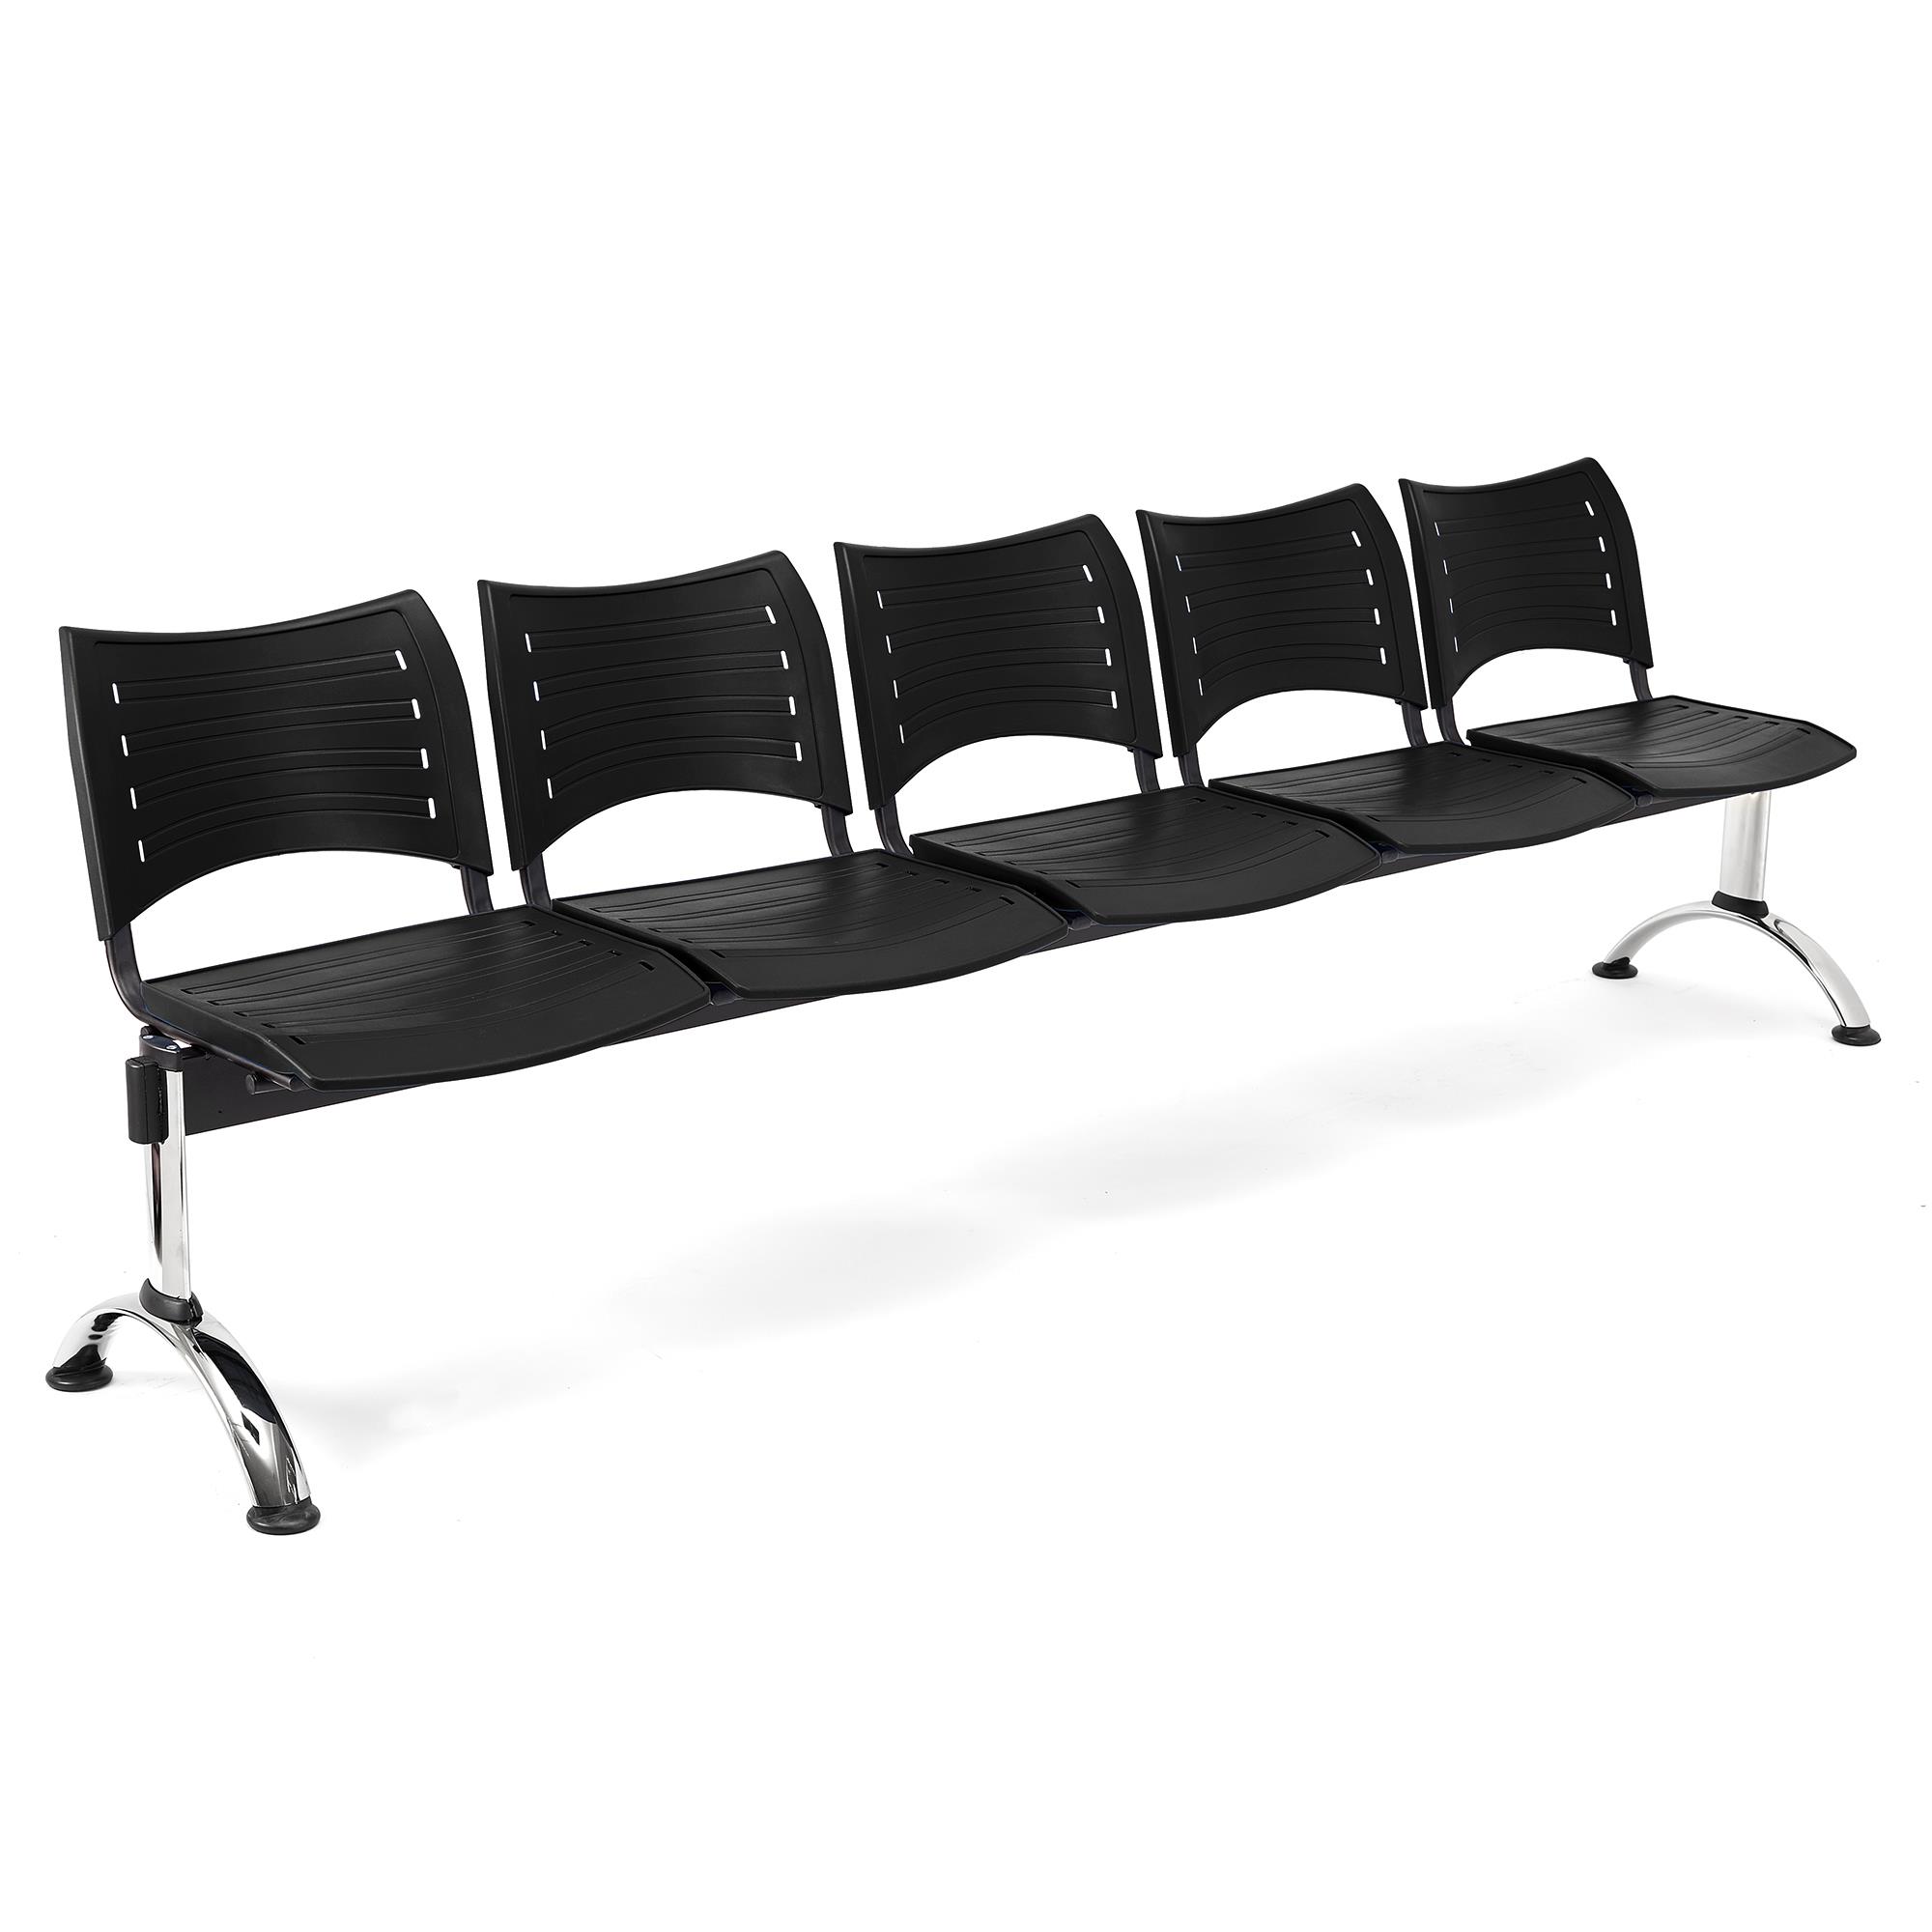 Wartebank ELVA 5-Sitzer, Metallgestell, Kunststoff, Farbe Schwarz